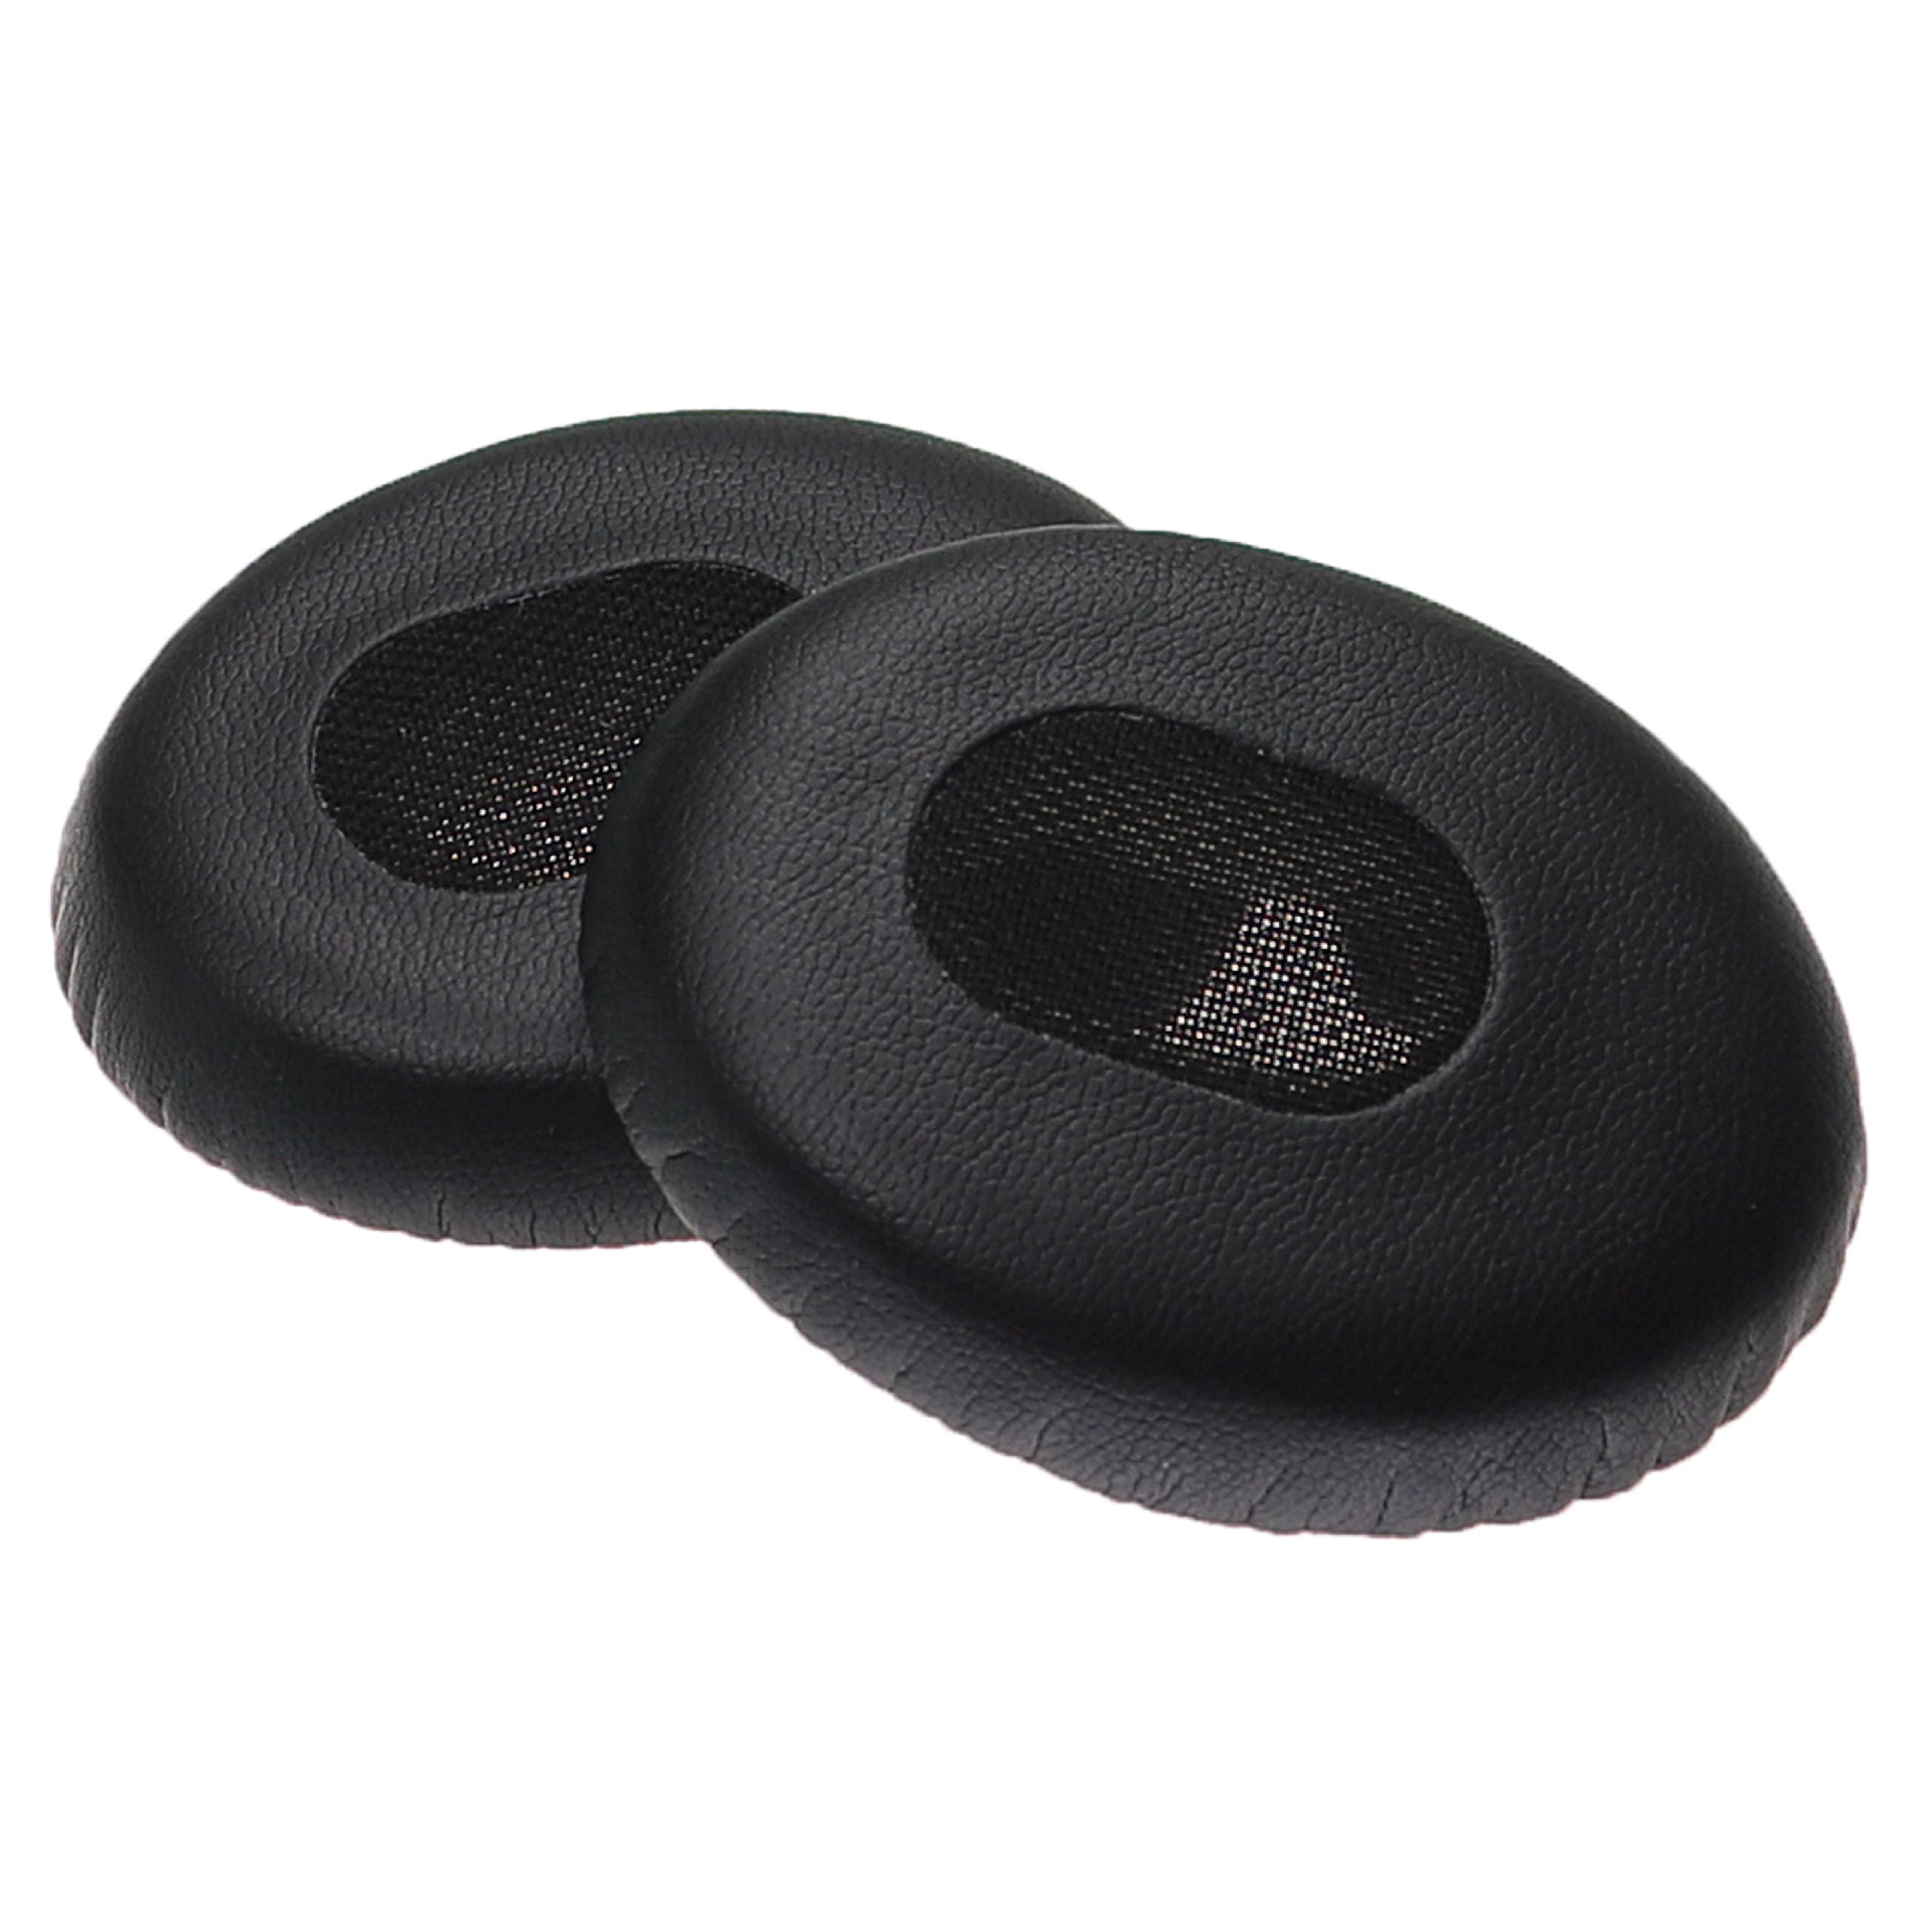 Poduszki do słuchawek QuietComfort - pady z pianką Memory, miękkie, grub. 31 mm, czarny